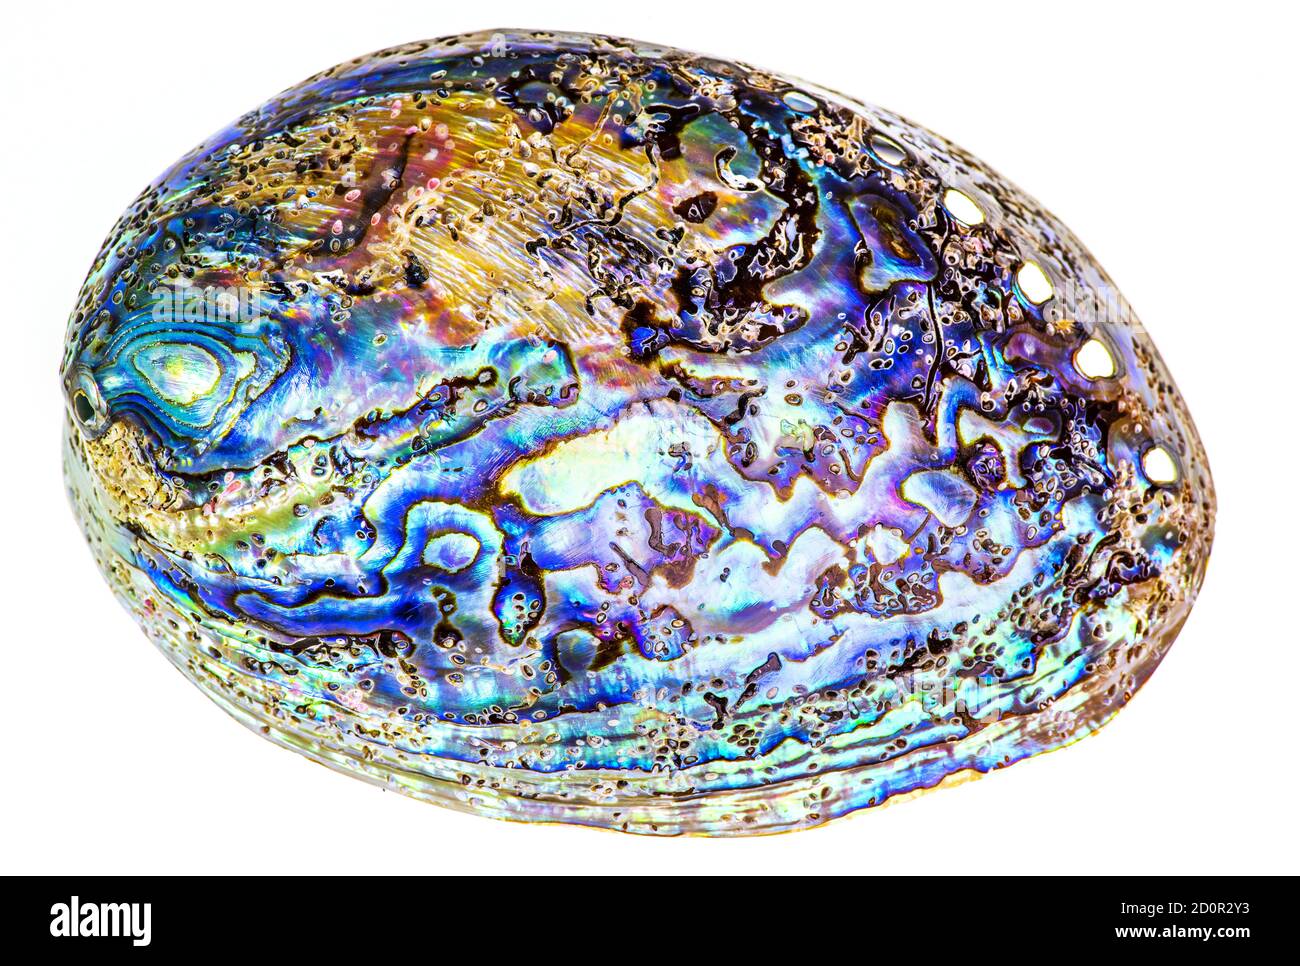 Polierte Taua-Abalone-Muschel (Haliotis Iris) aus Neuseeland. Kurven und Schichten sind mit lebendigen Perlen bedeckt. Isoliert auf Weiß Stockfoto